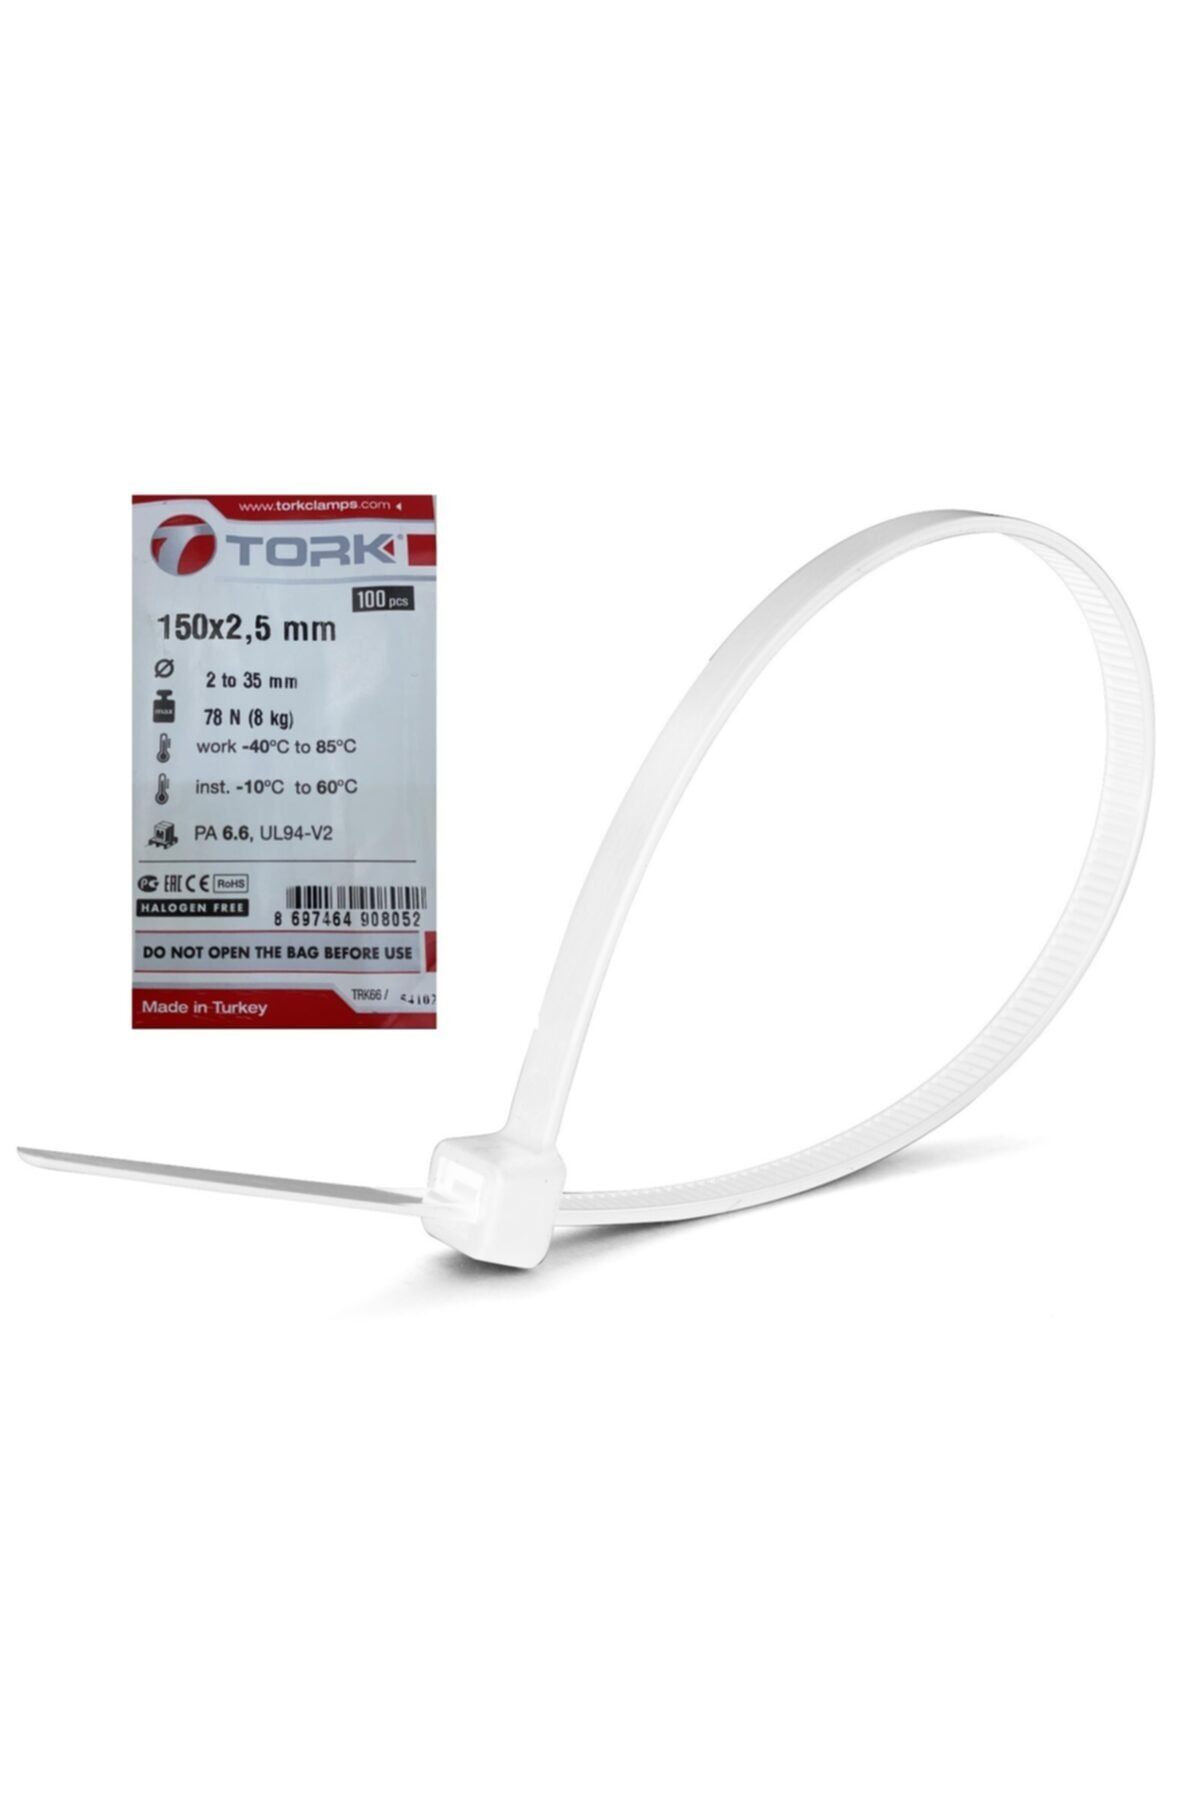 TORK Plastik Kelepçe Kablo Bağı 100'lü 150x2.5 mm Beyaz